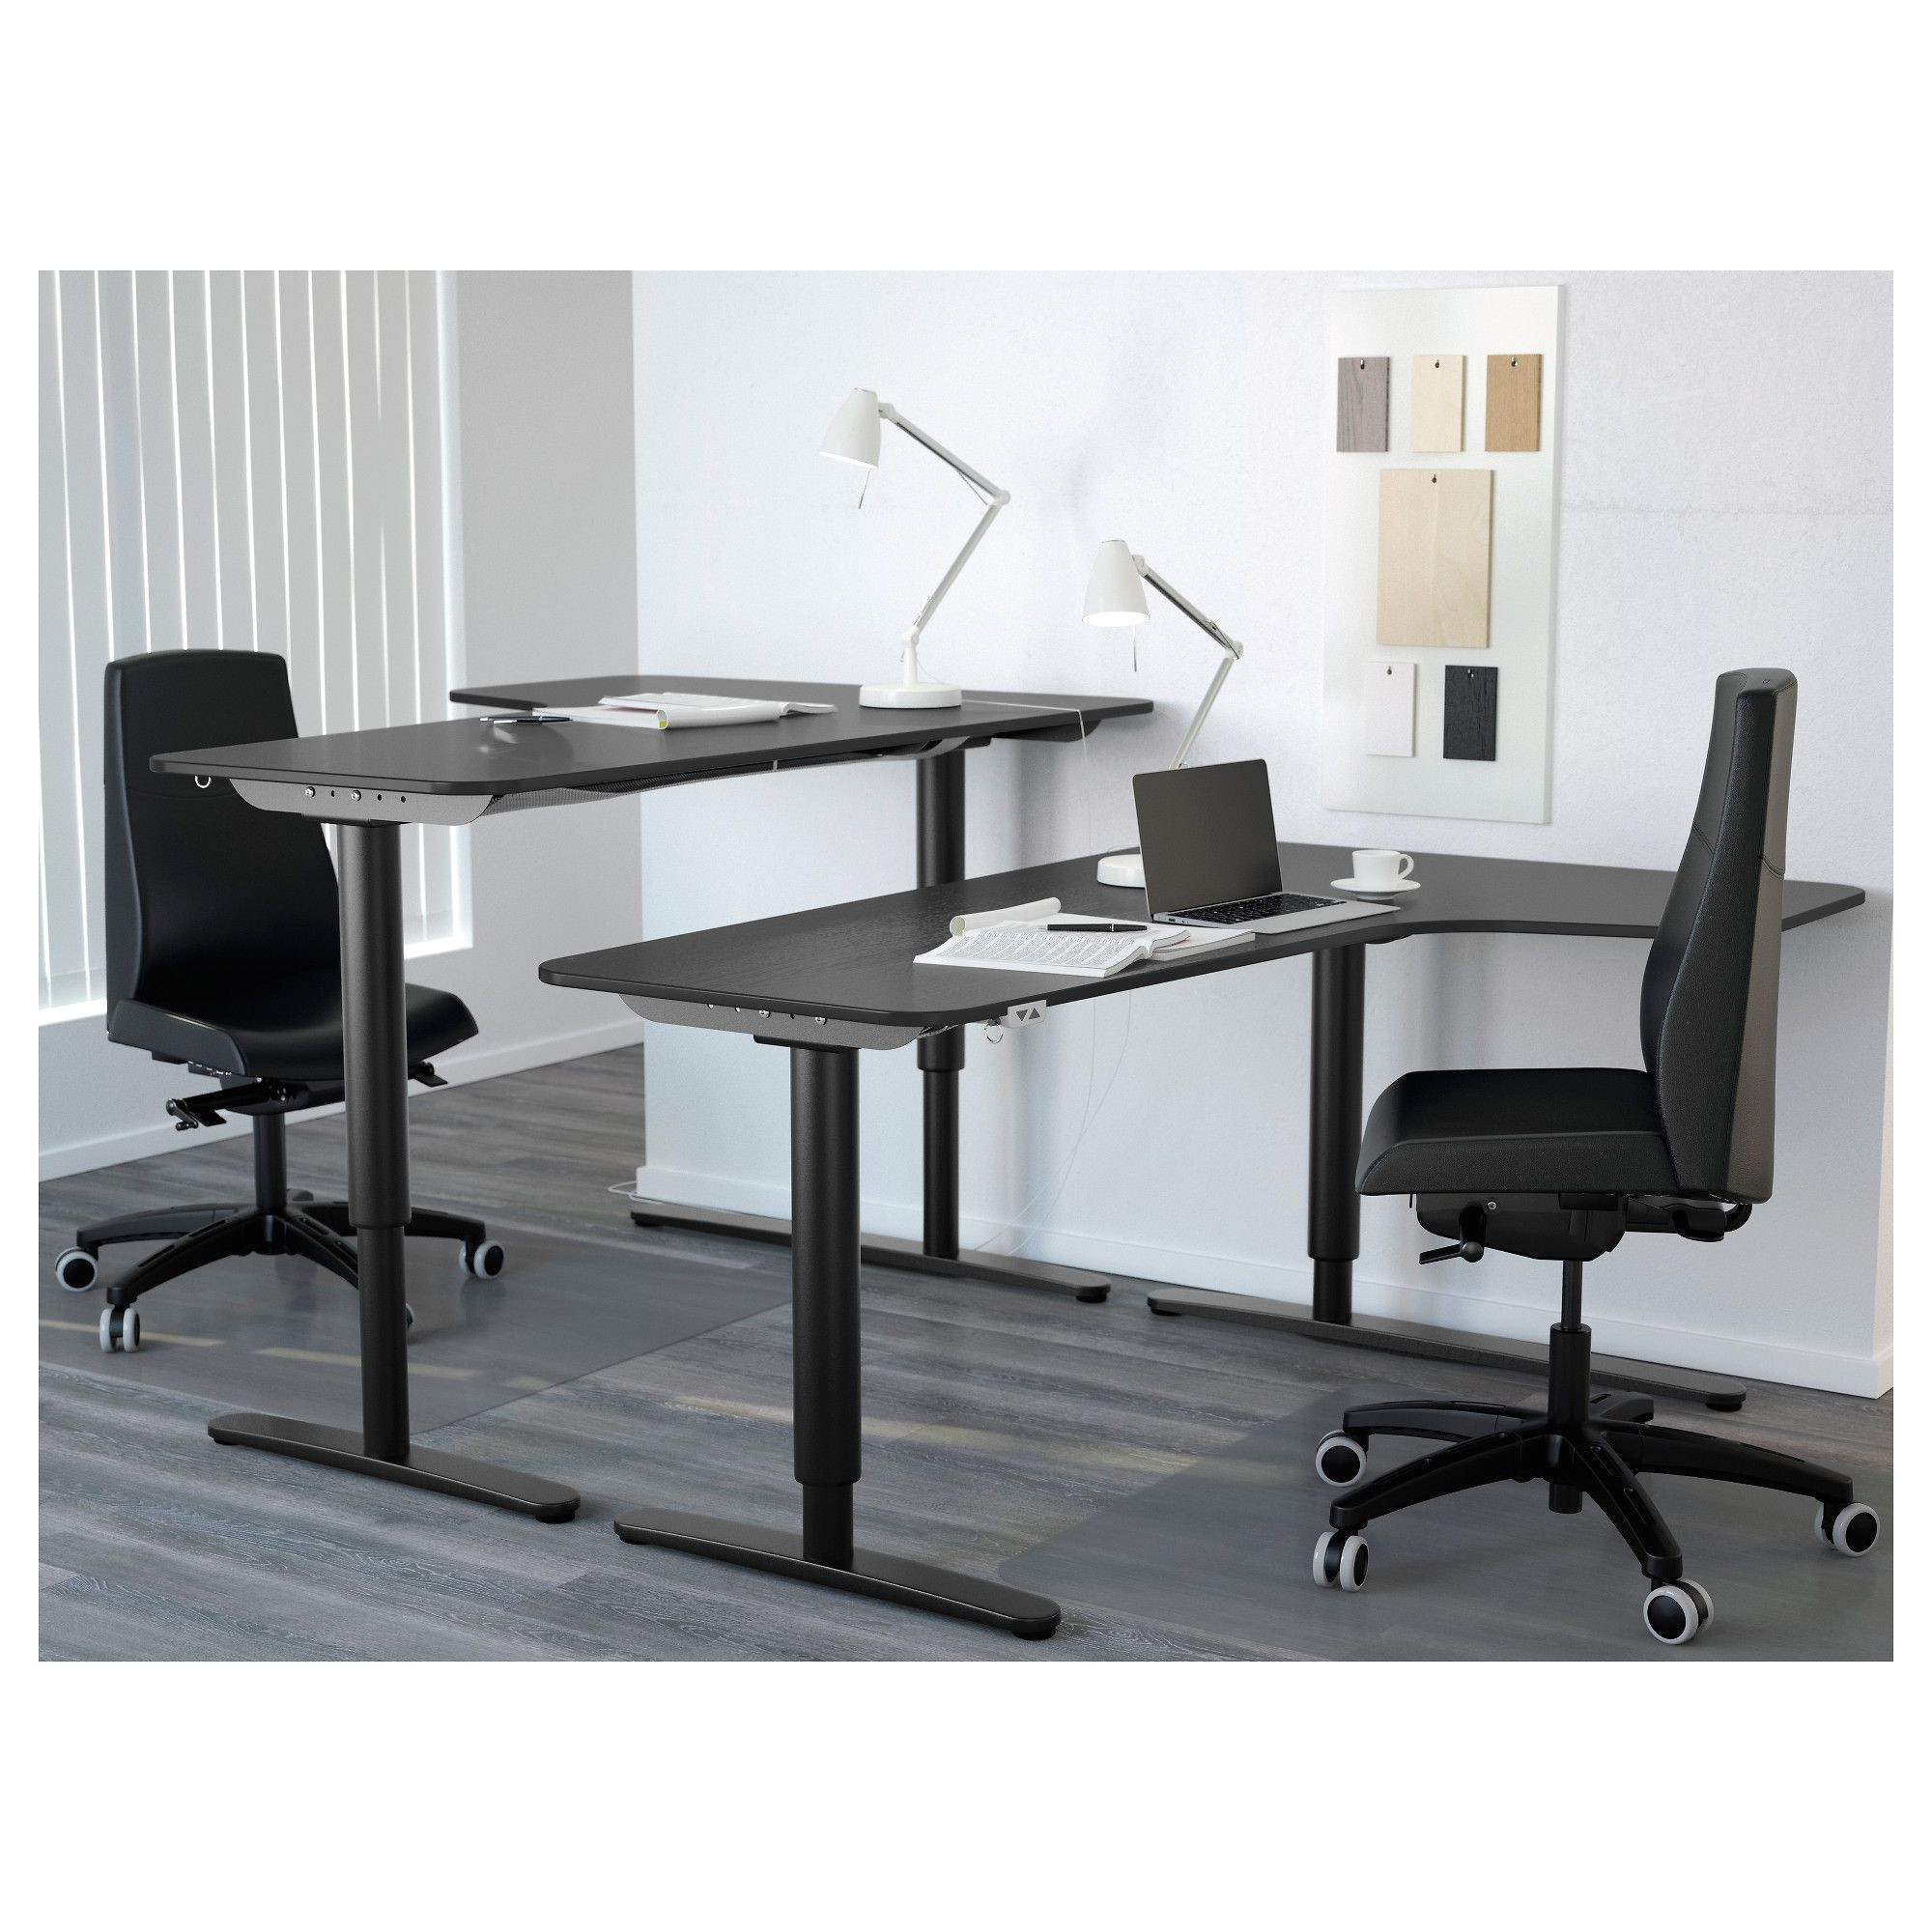 secretary desk with hutch ikea luxury ikea bekant corner desk